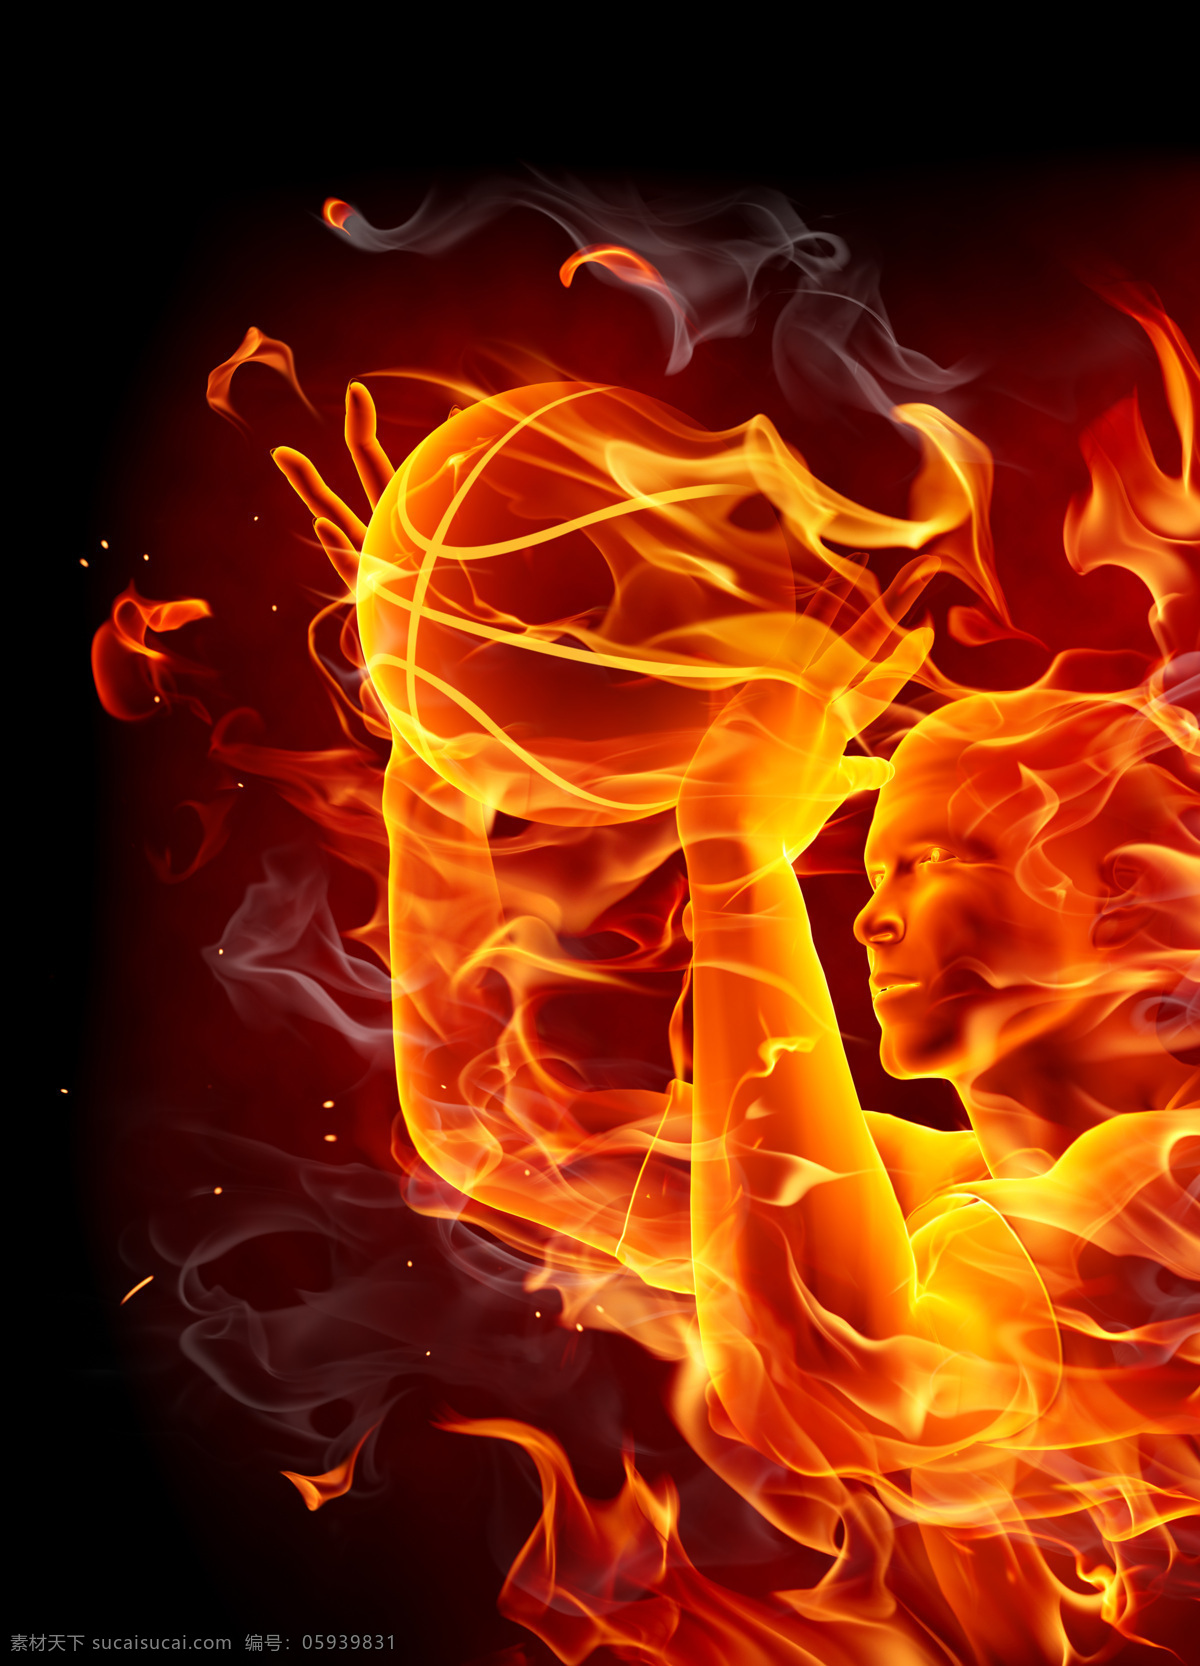 熊熊 大火 篮球 运动员 火焰 烟雾 燃烧 熊熊大火 体育运动 火焰图片 生活百科